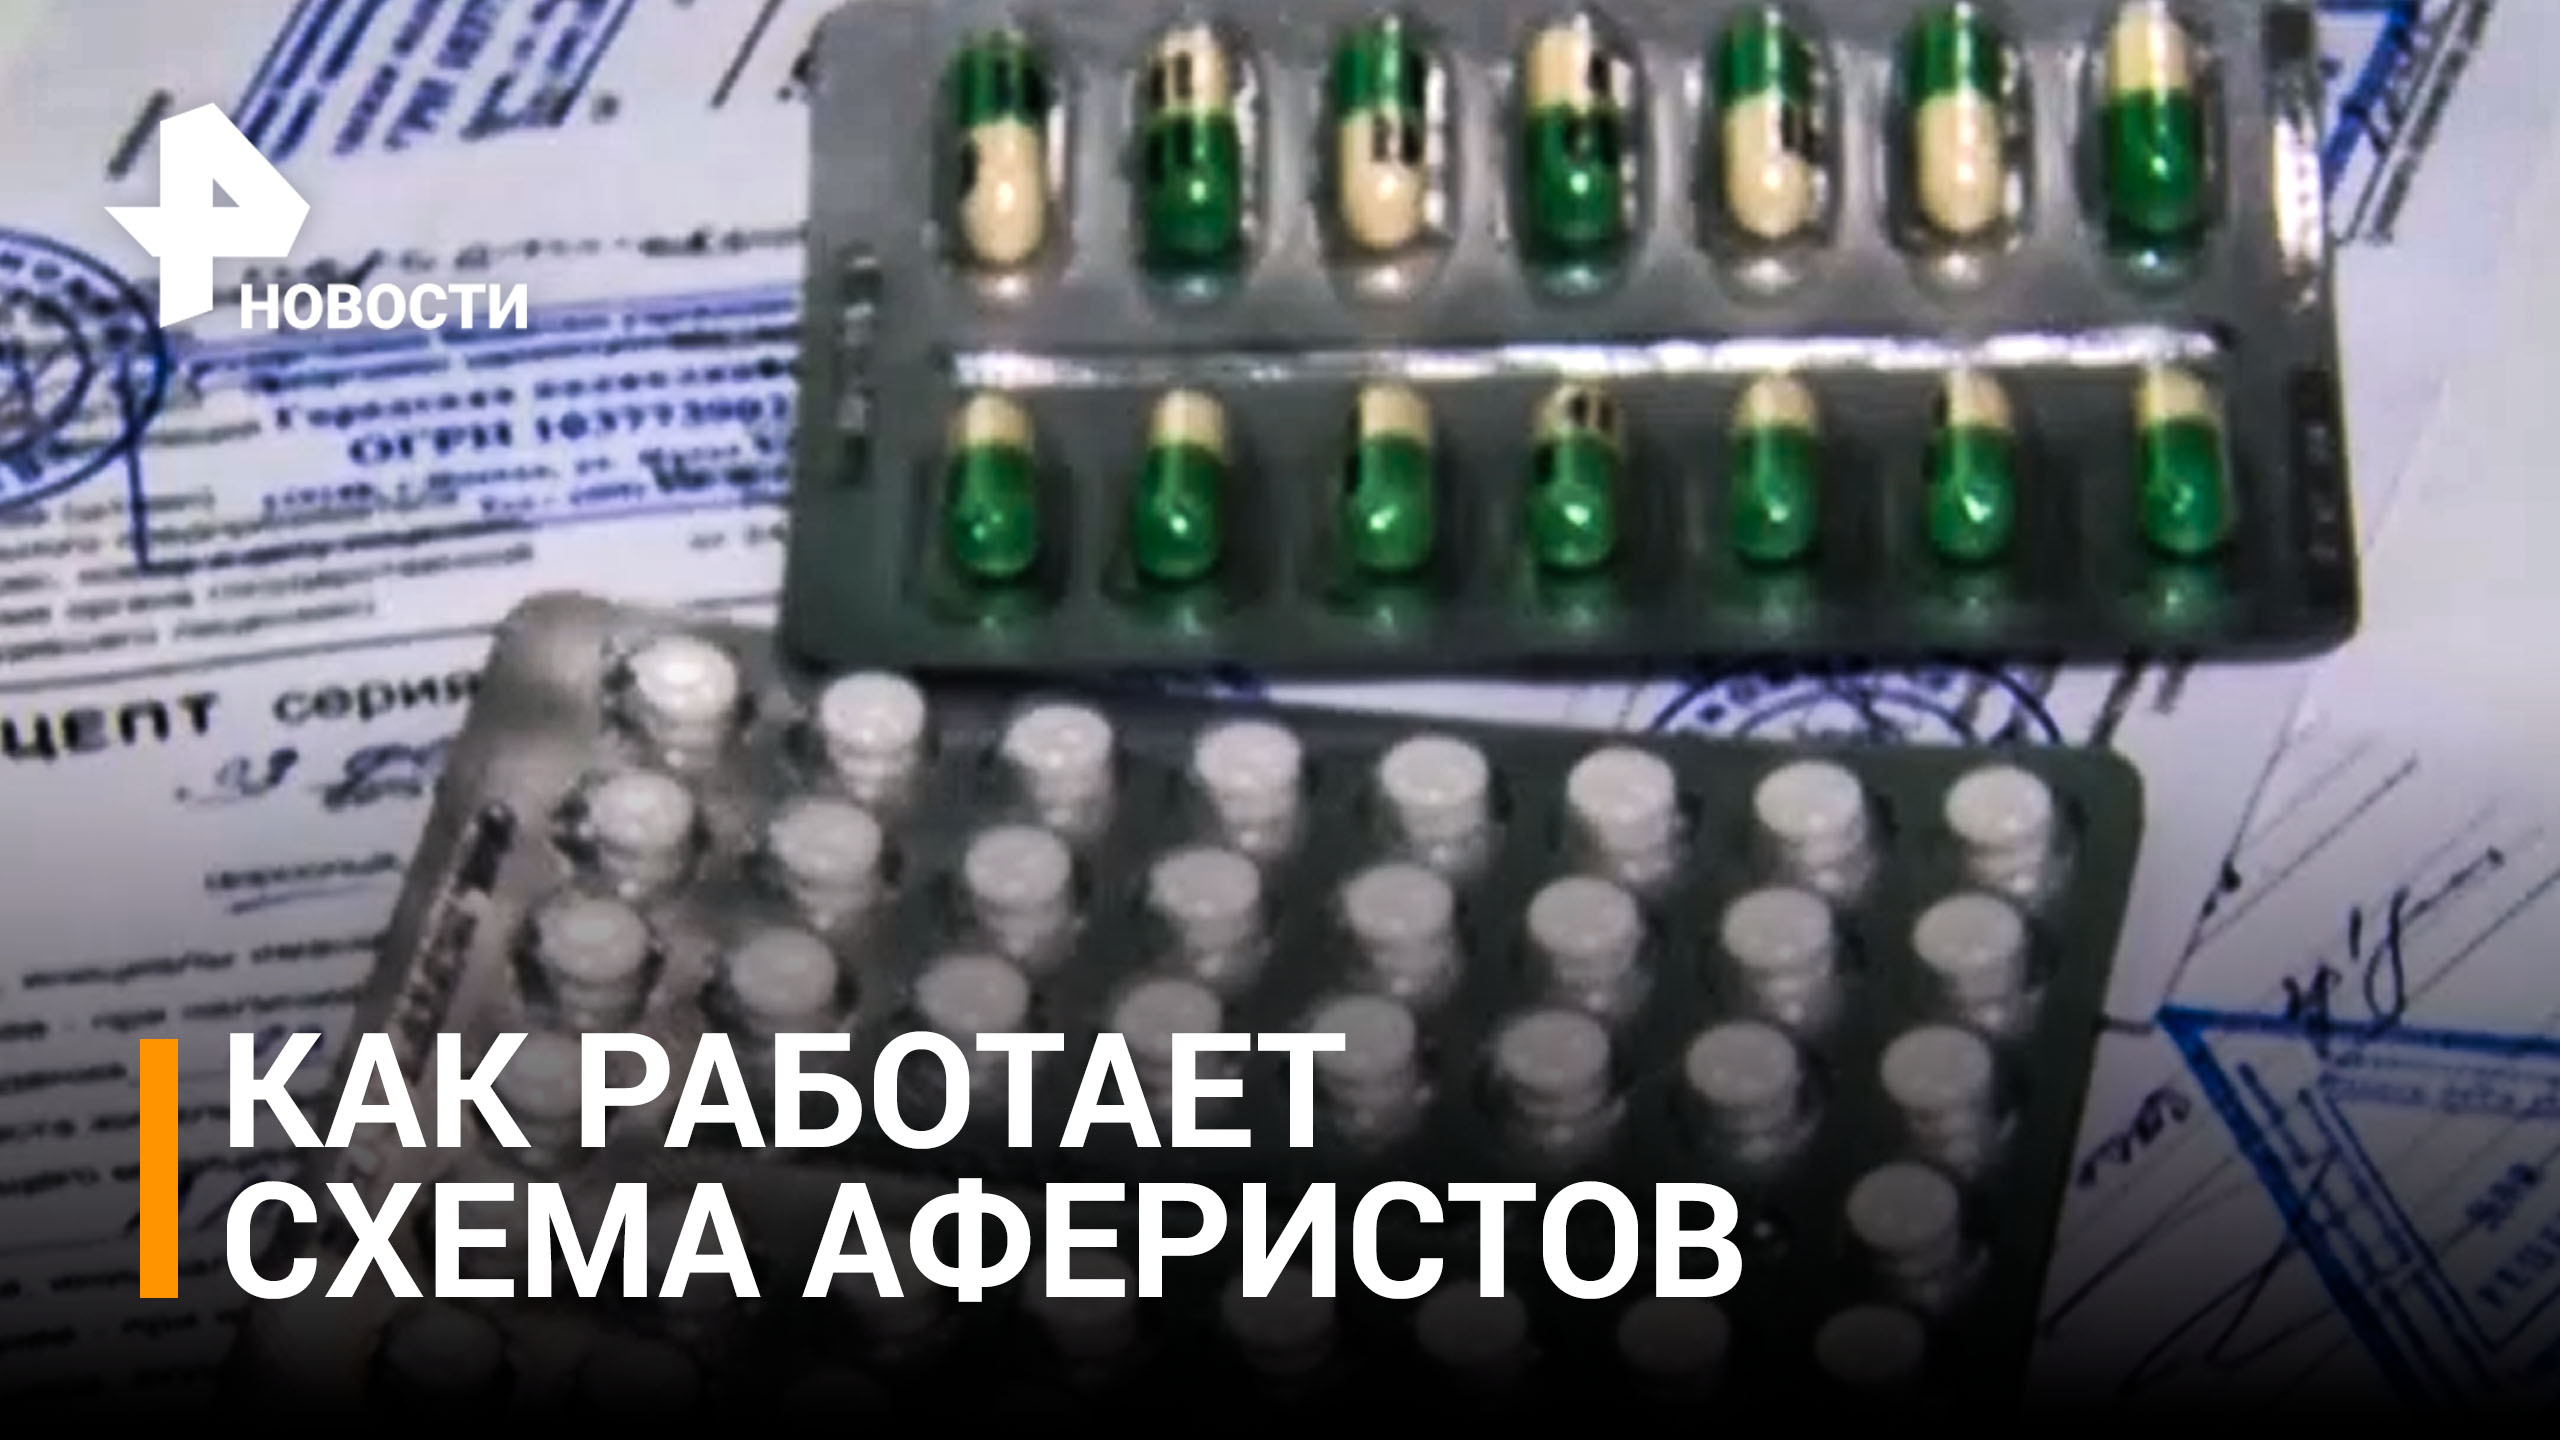 Аферисты начали продавать поддельные рецепты на лекарства / РЕН Новости